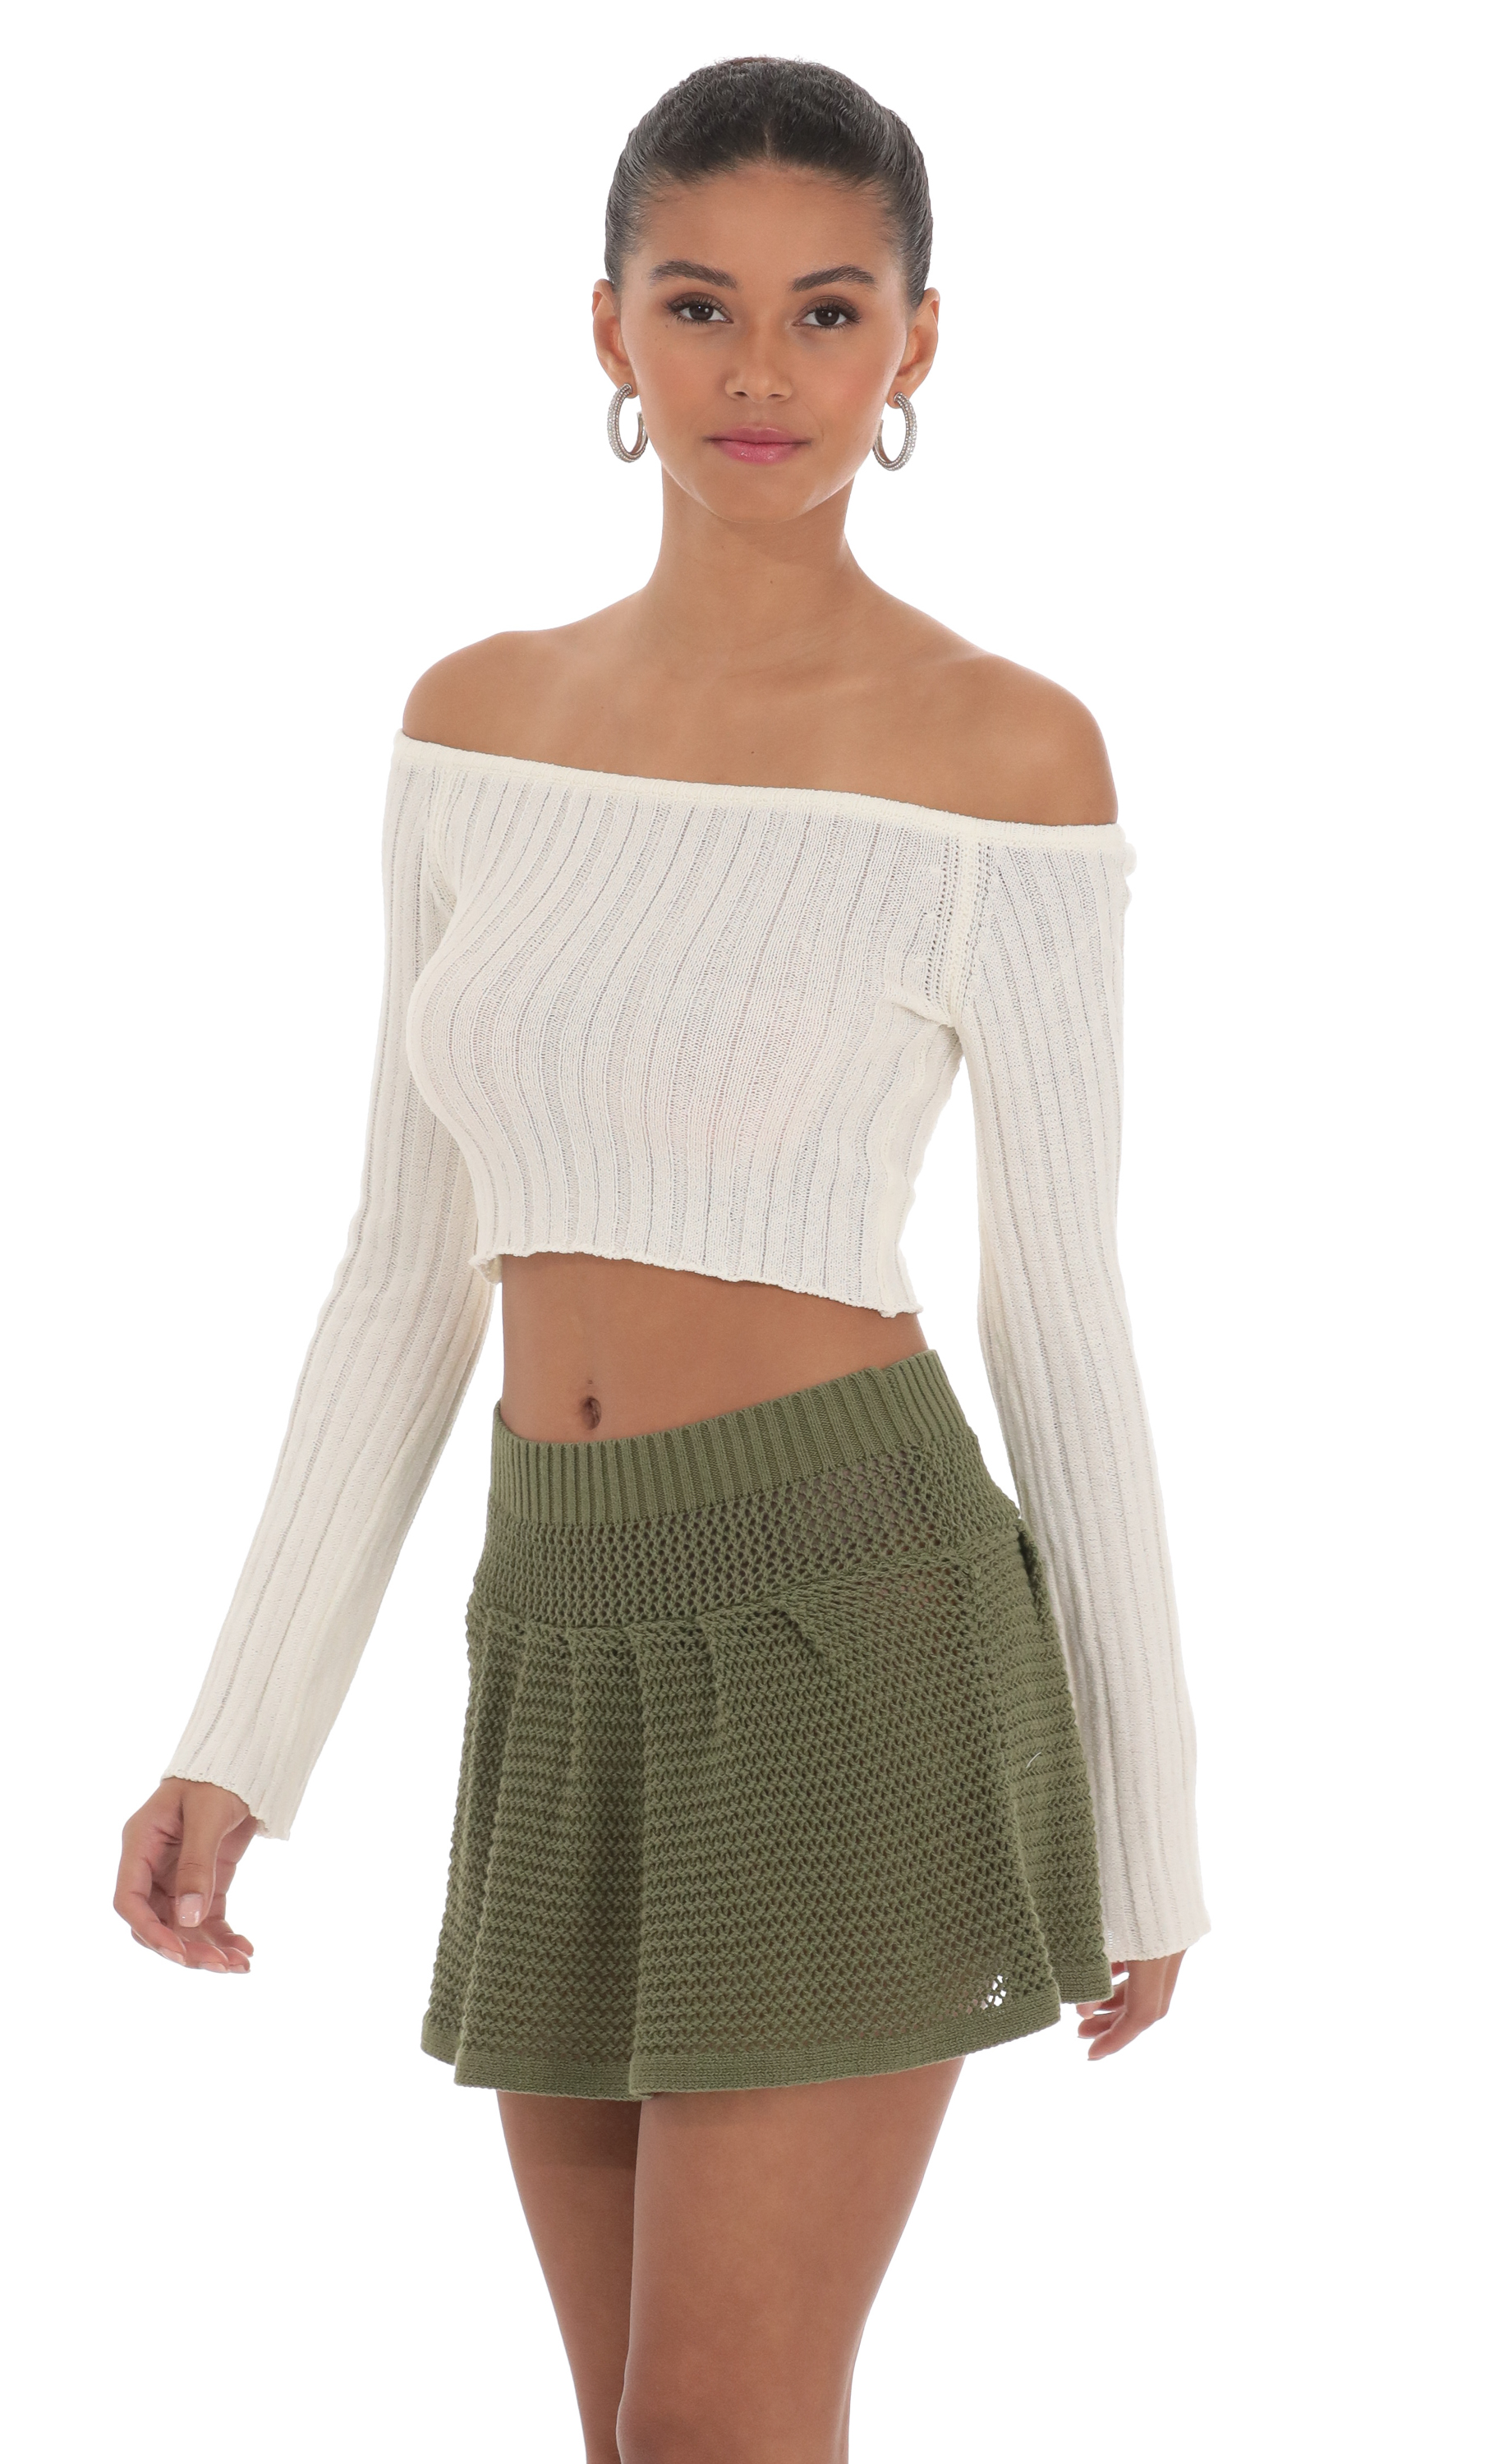 Crochet Skirt in Olive Green